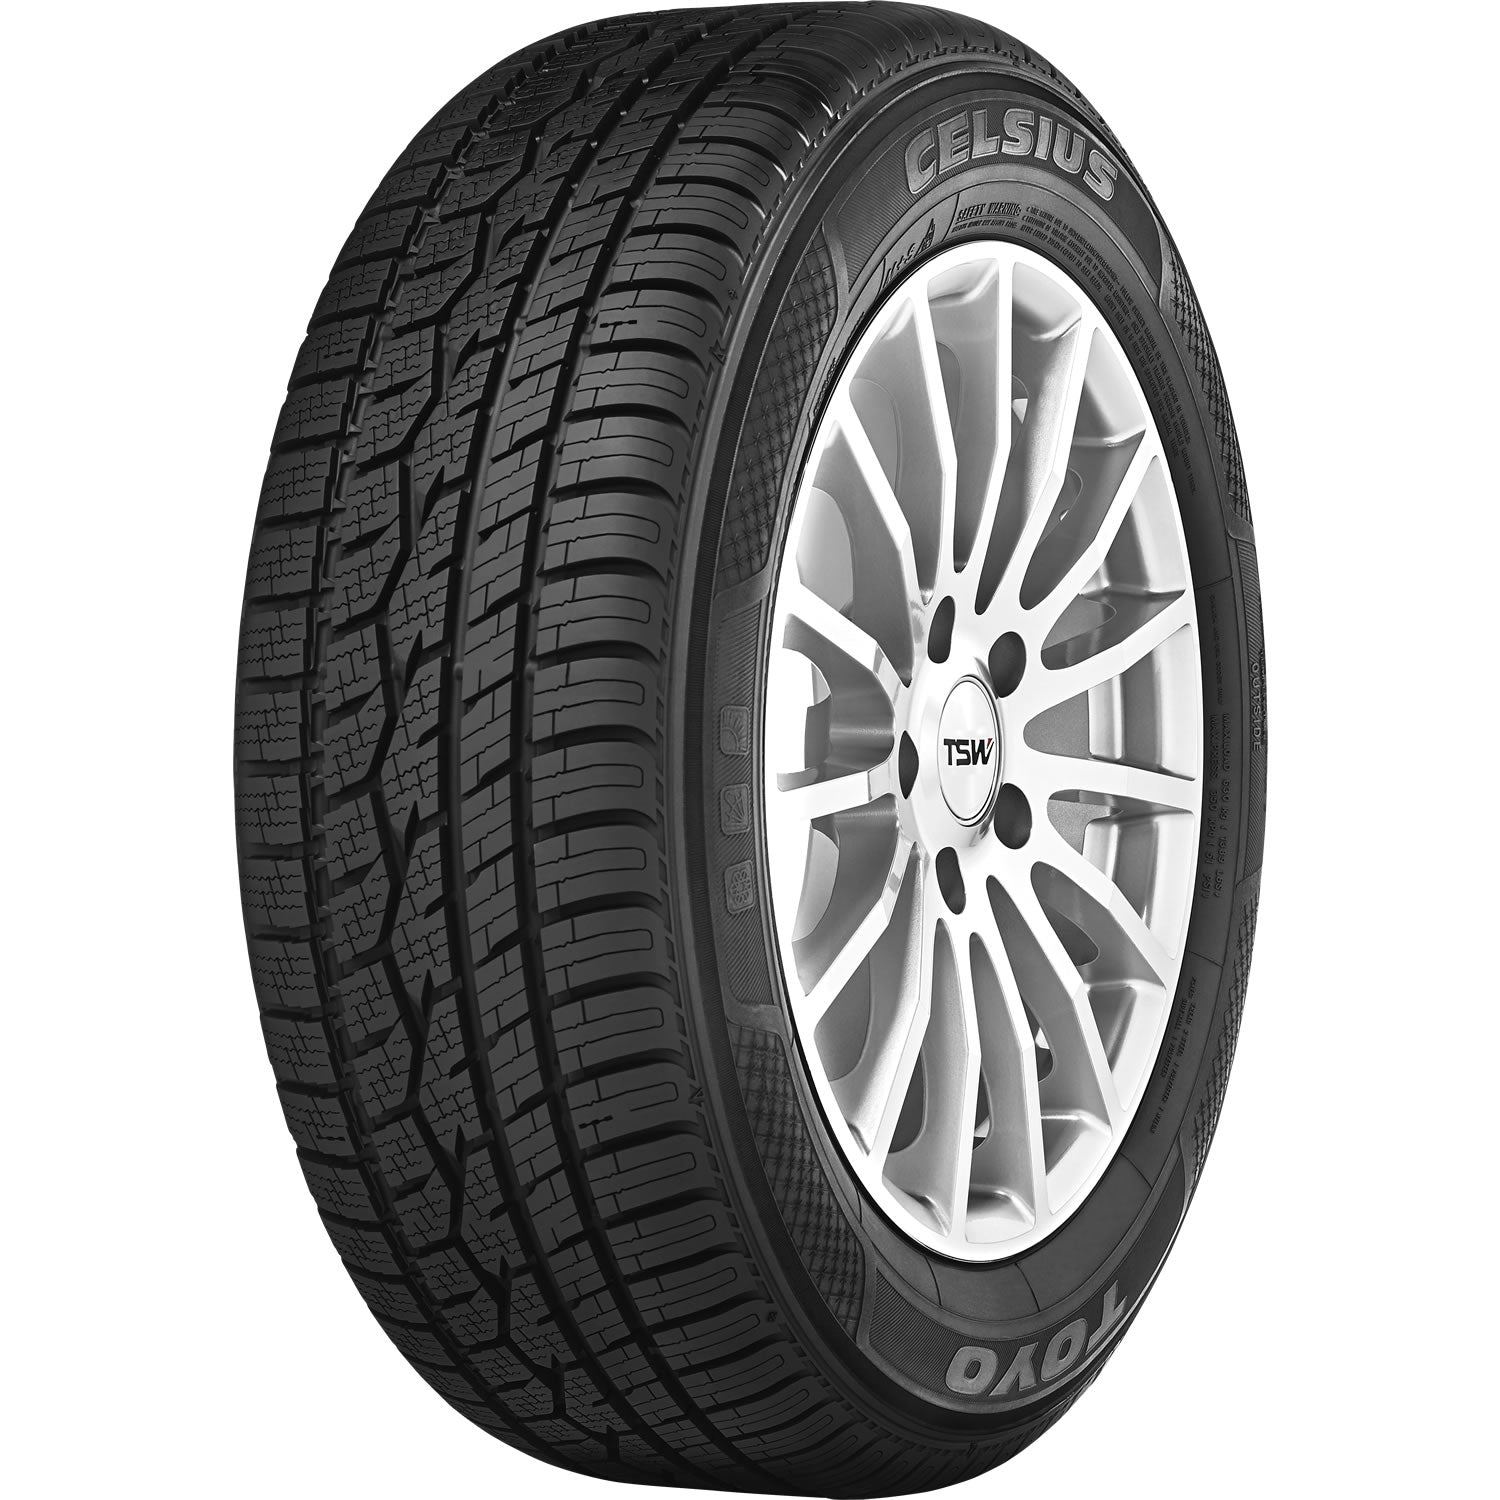 TOYO TIRES CELSIUS 215/70R15 (26.9X8.7R 15) Tires